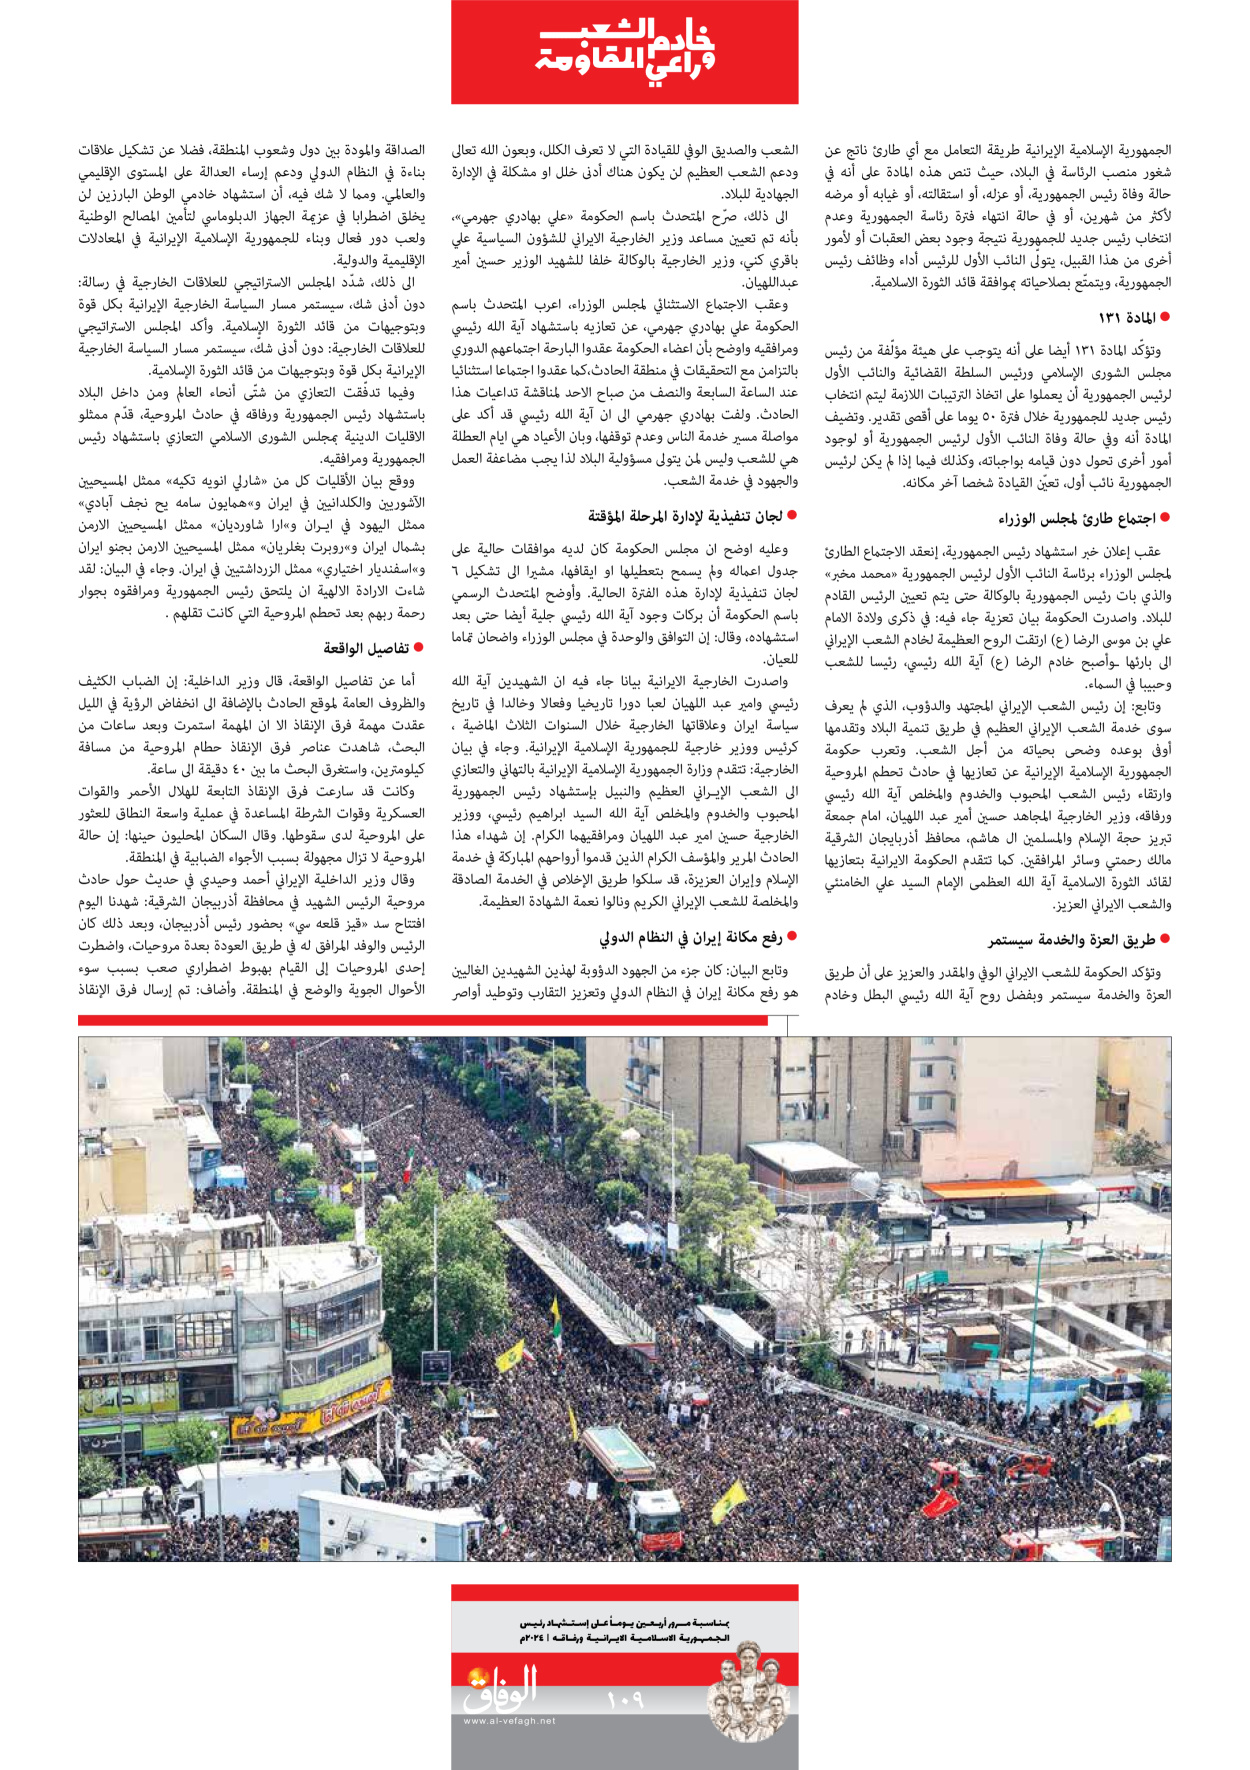 صحیفة ایران الدولیة الوفاق - ملحق ویژه نامه چهلم شهید رییسی - ٢٩ يونيو ٢٠٢٤ - الصفحة ۱۰۸